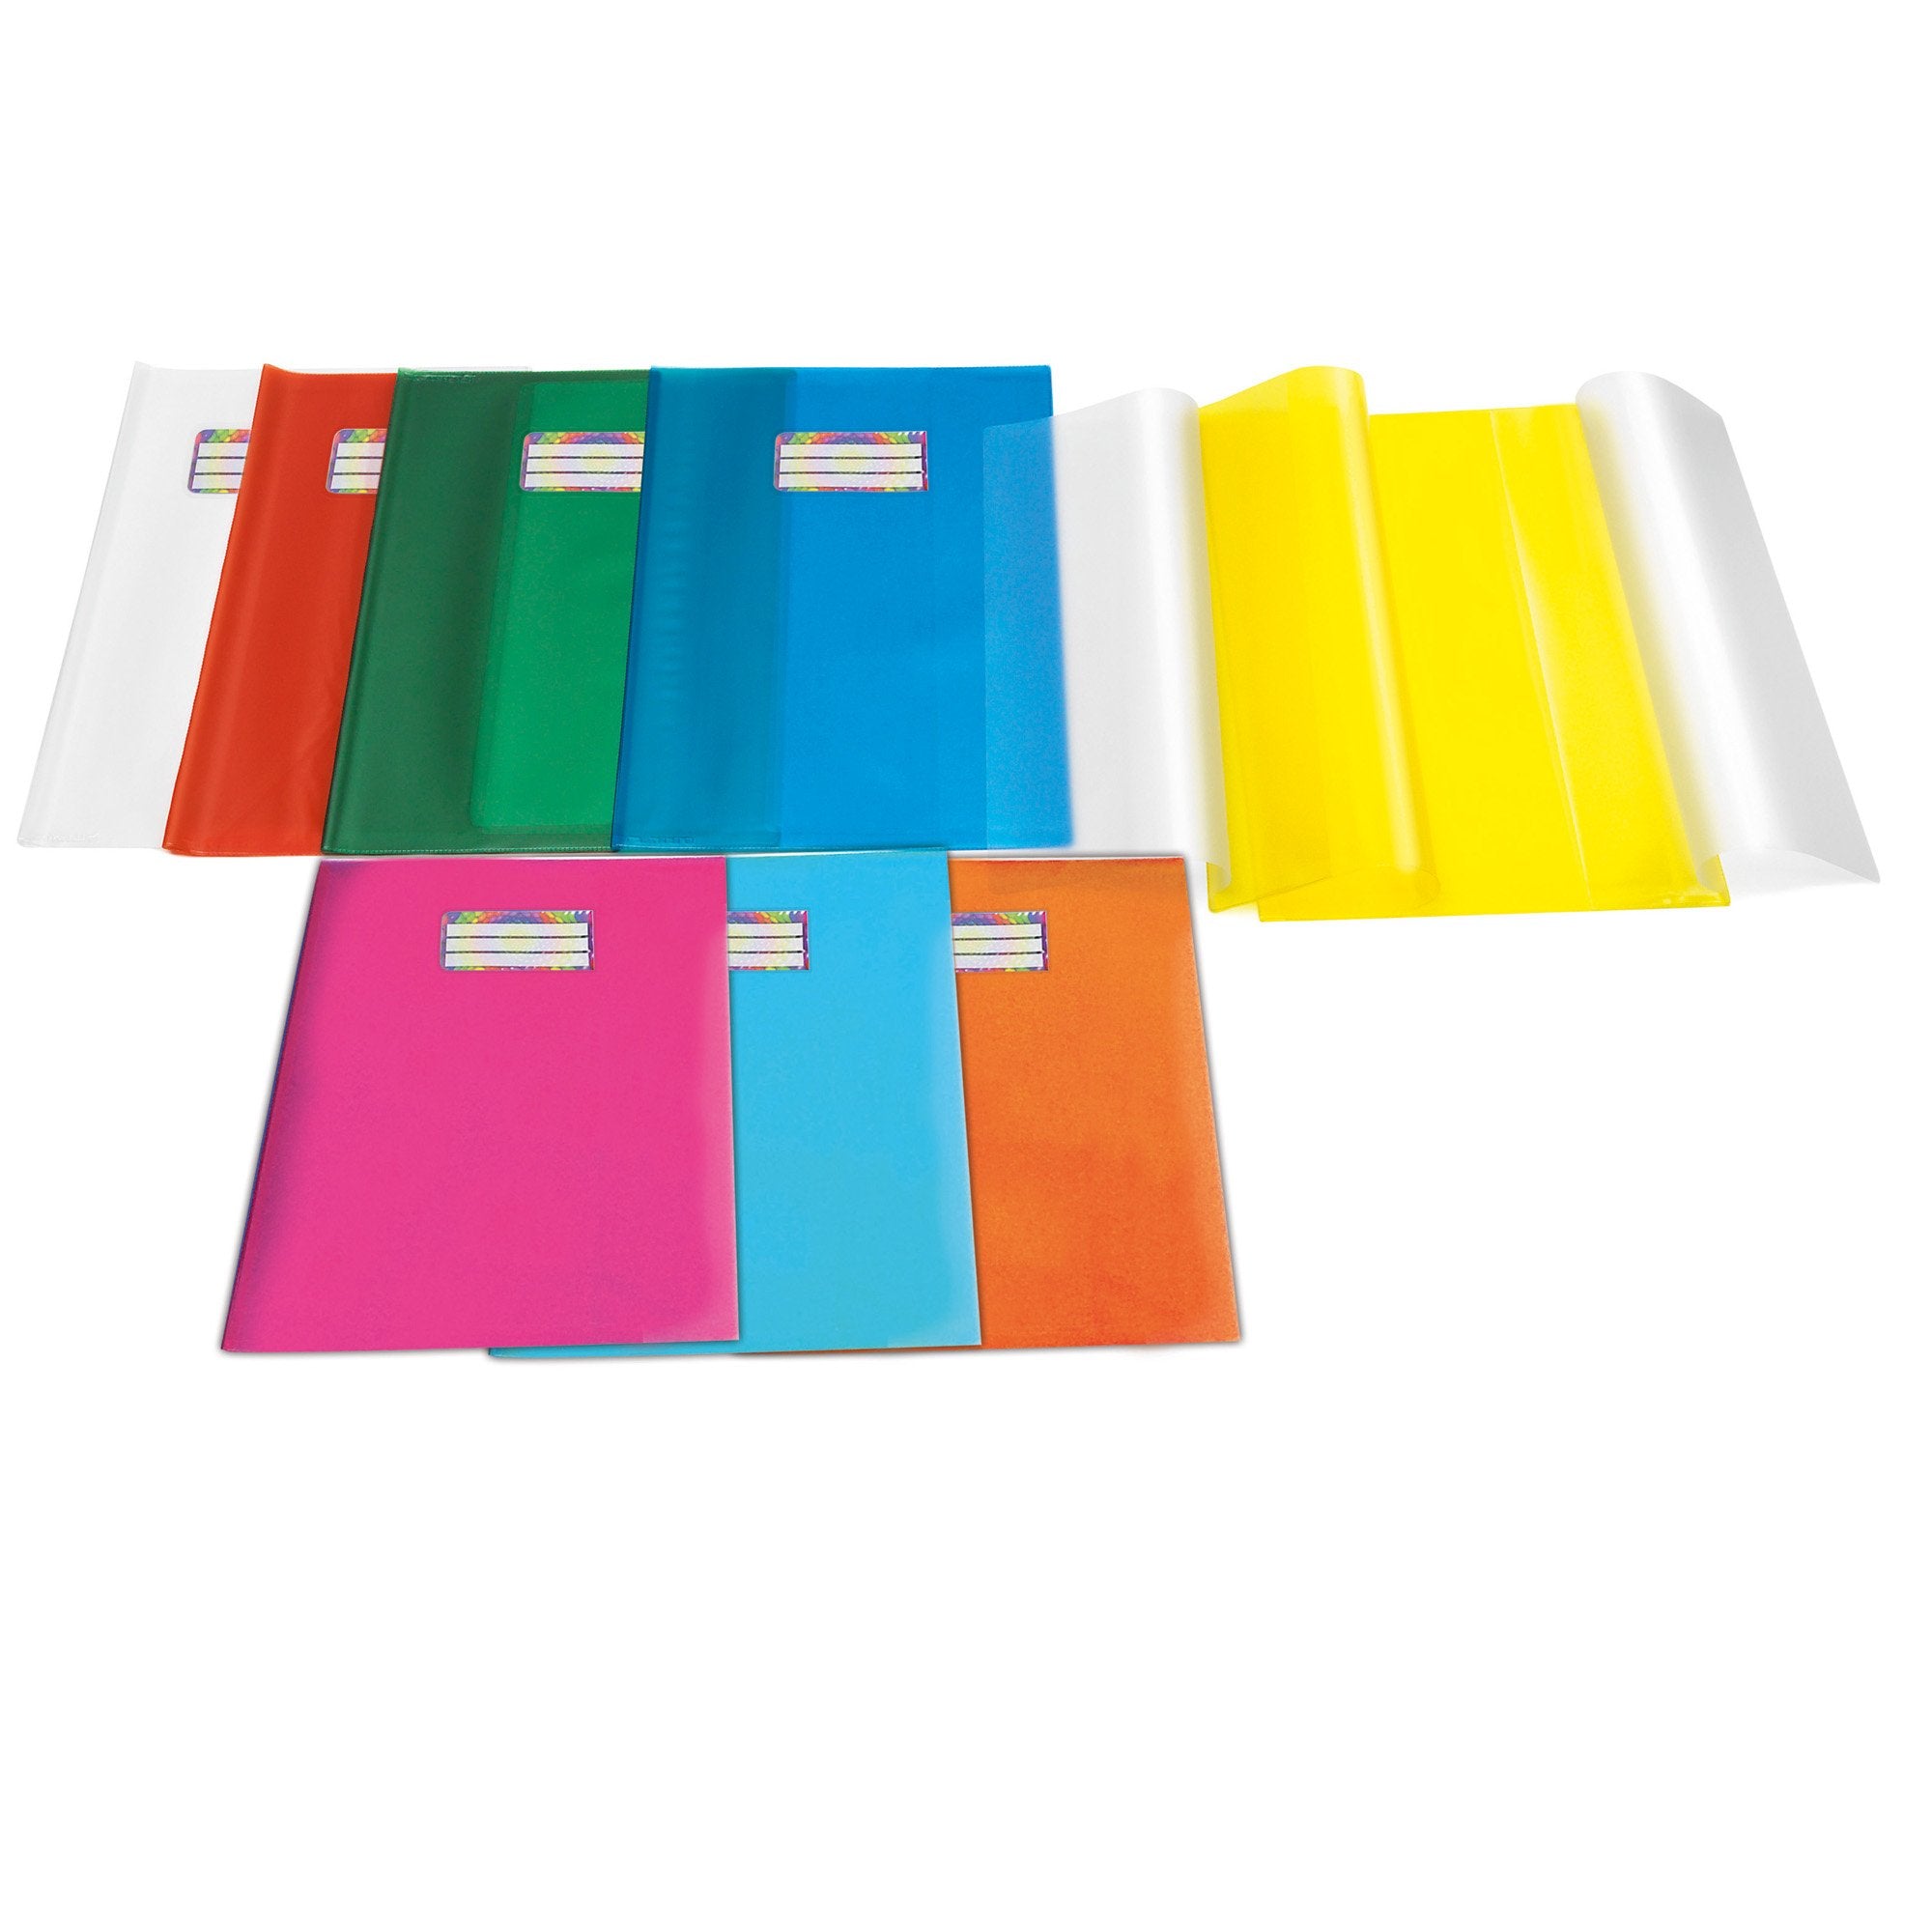 ri-plast-coprimaxi-pvc-goffrato-trasparente-emysilk-c-alette-21x30cm-giallo-riplast